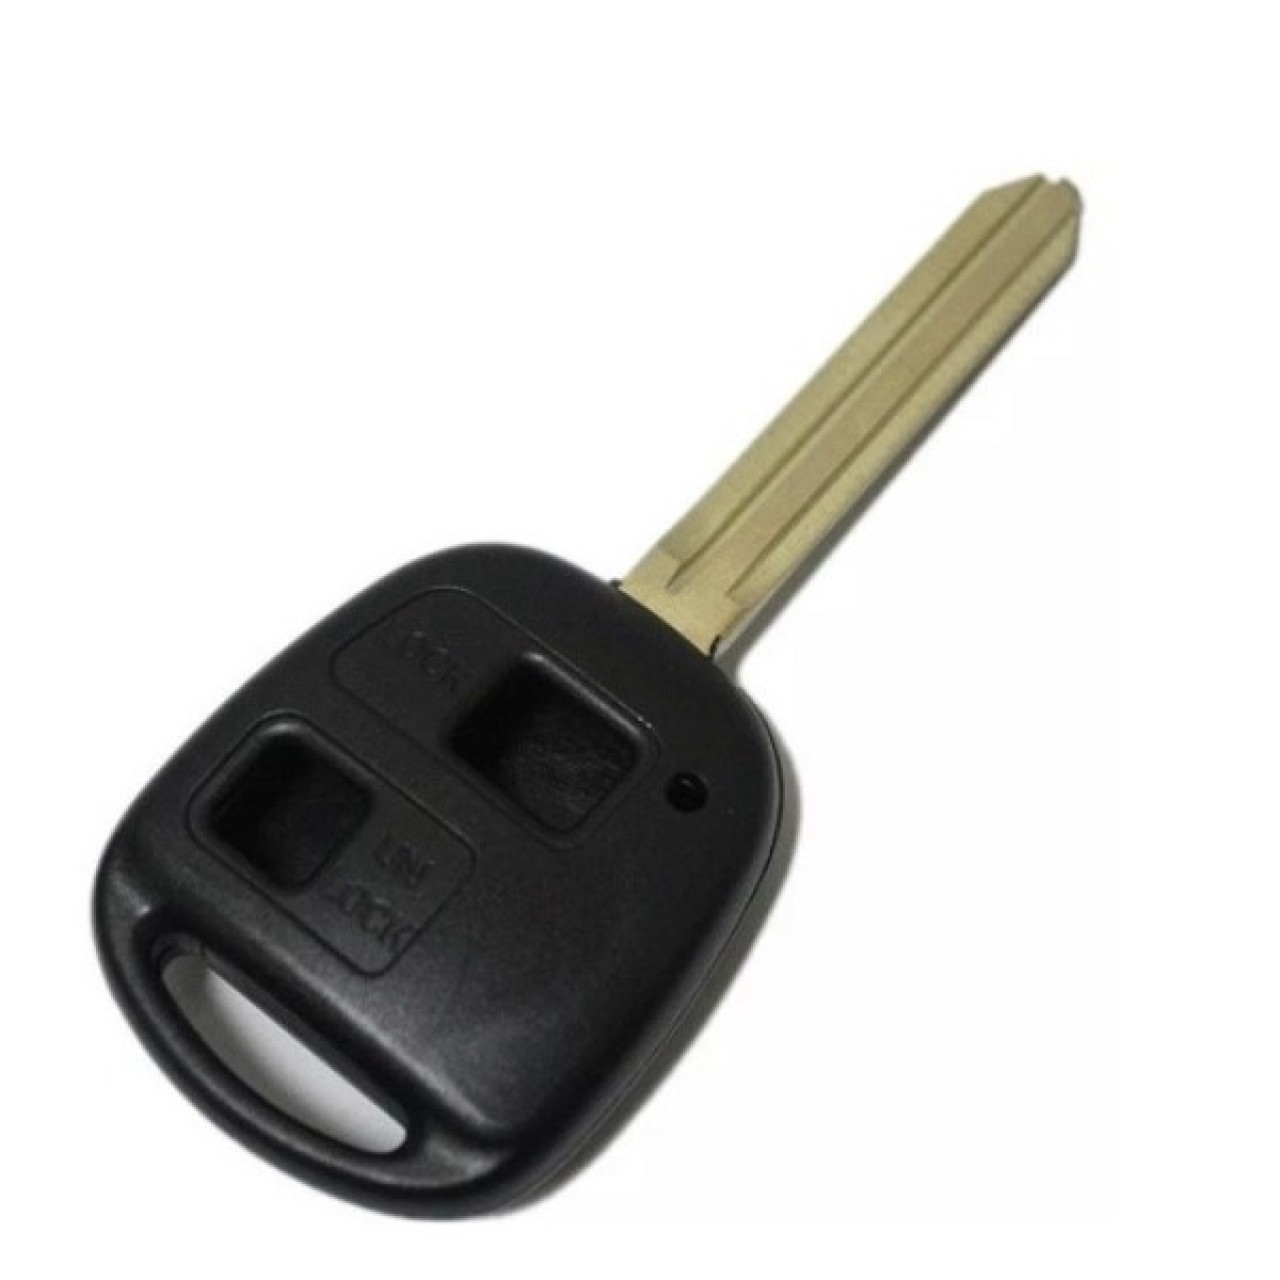 2 Button Key Shell Case For Toyota Prado RAV4 Echo Corolla Avalon Camry Prado FOB Key